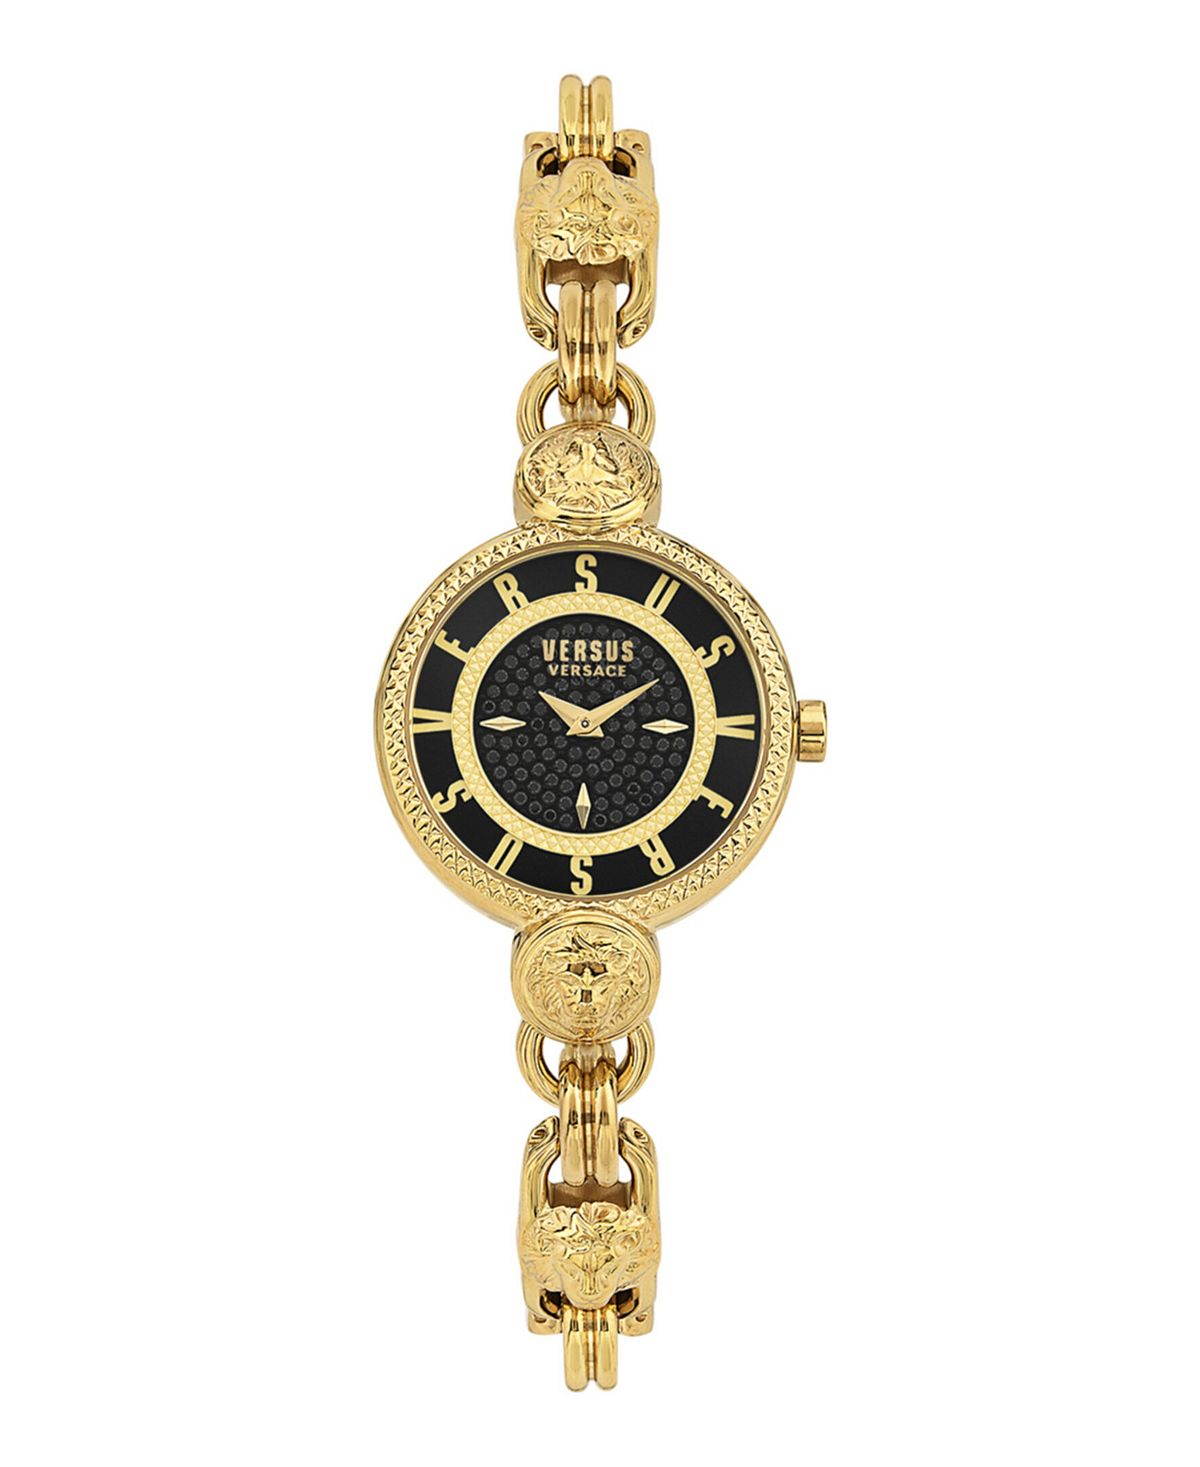 Женские кварцевые часы Les Docks Petite с 2 стрелками из нержавеющей стали золотистого цвета, 30 мм Versus Versace